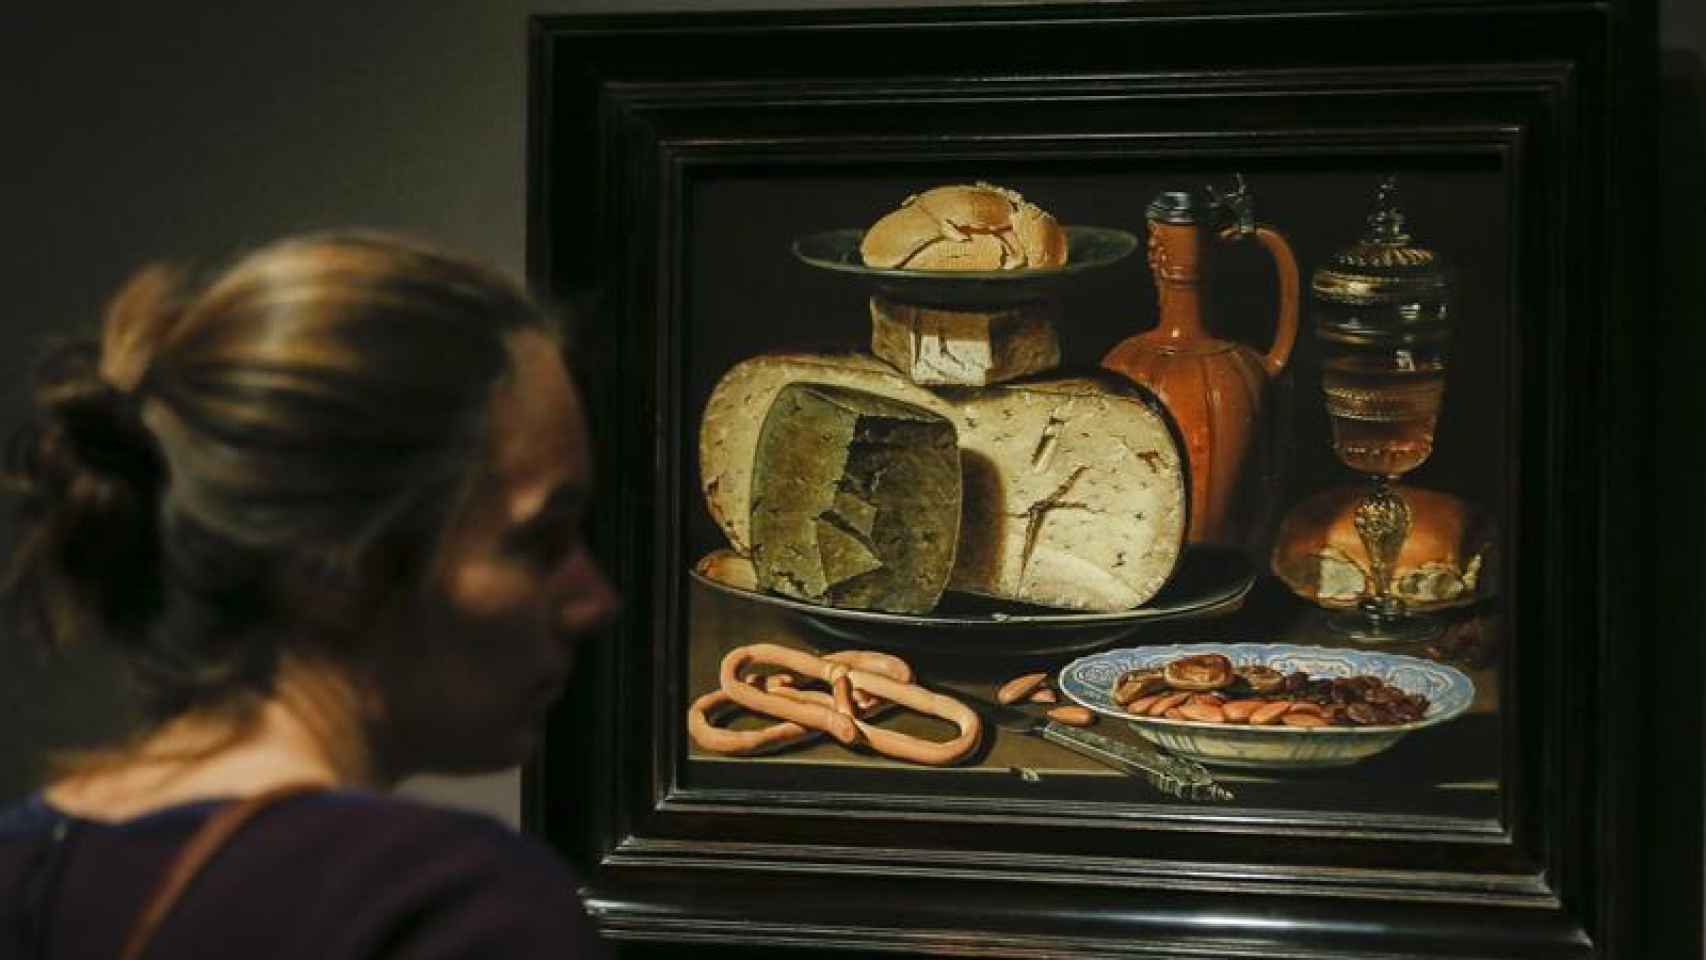 El queso era uno de los alimentos habituales en las composiciones de la pintora.